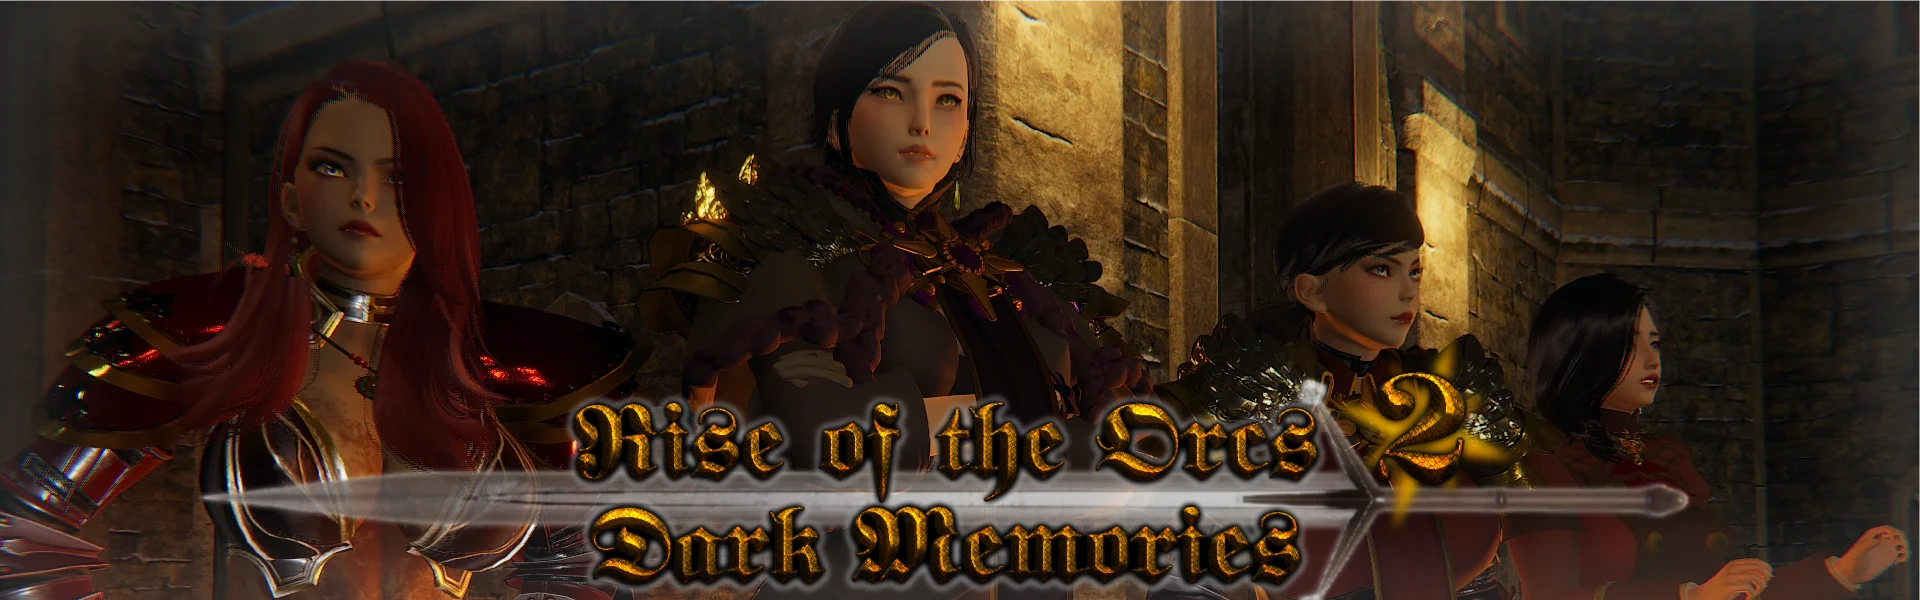 Download Rise of the Orcs 2: Dark Memories